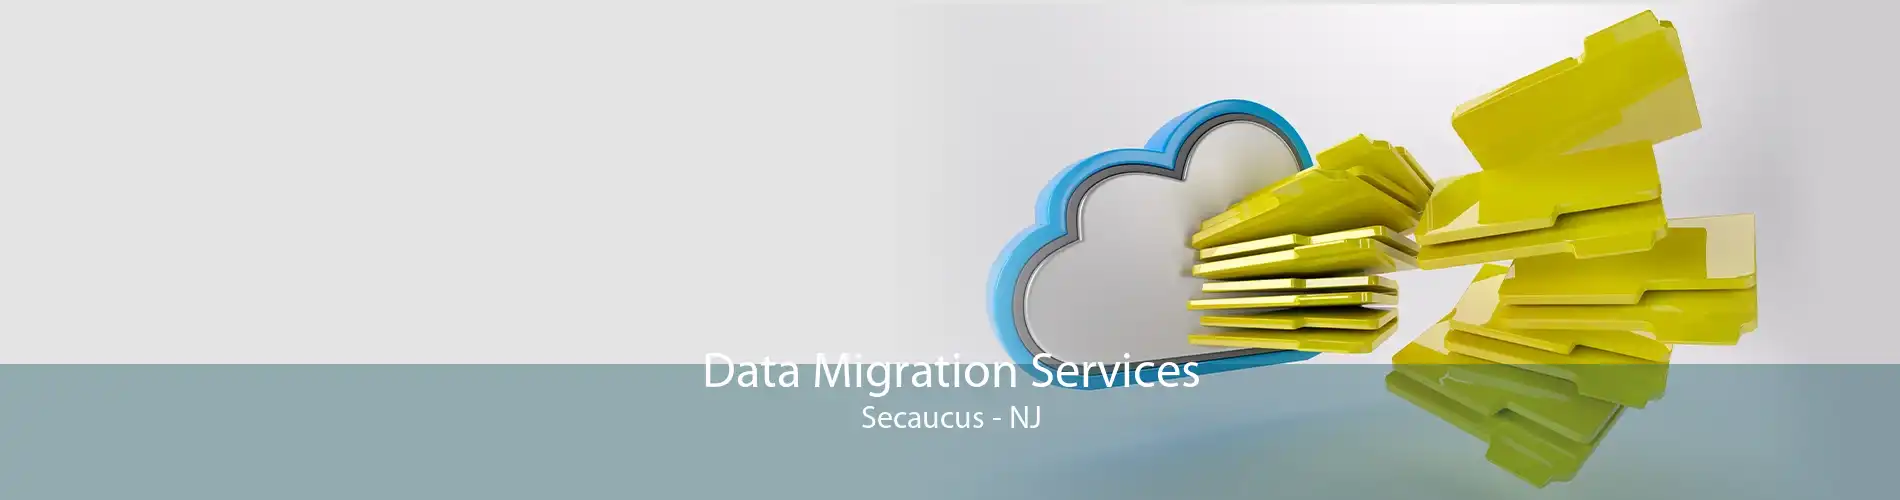 Data Migration Services Secaucus - NJ